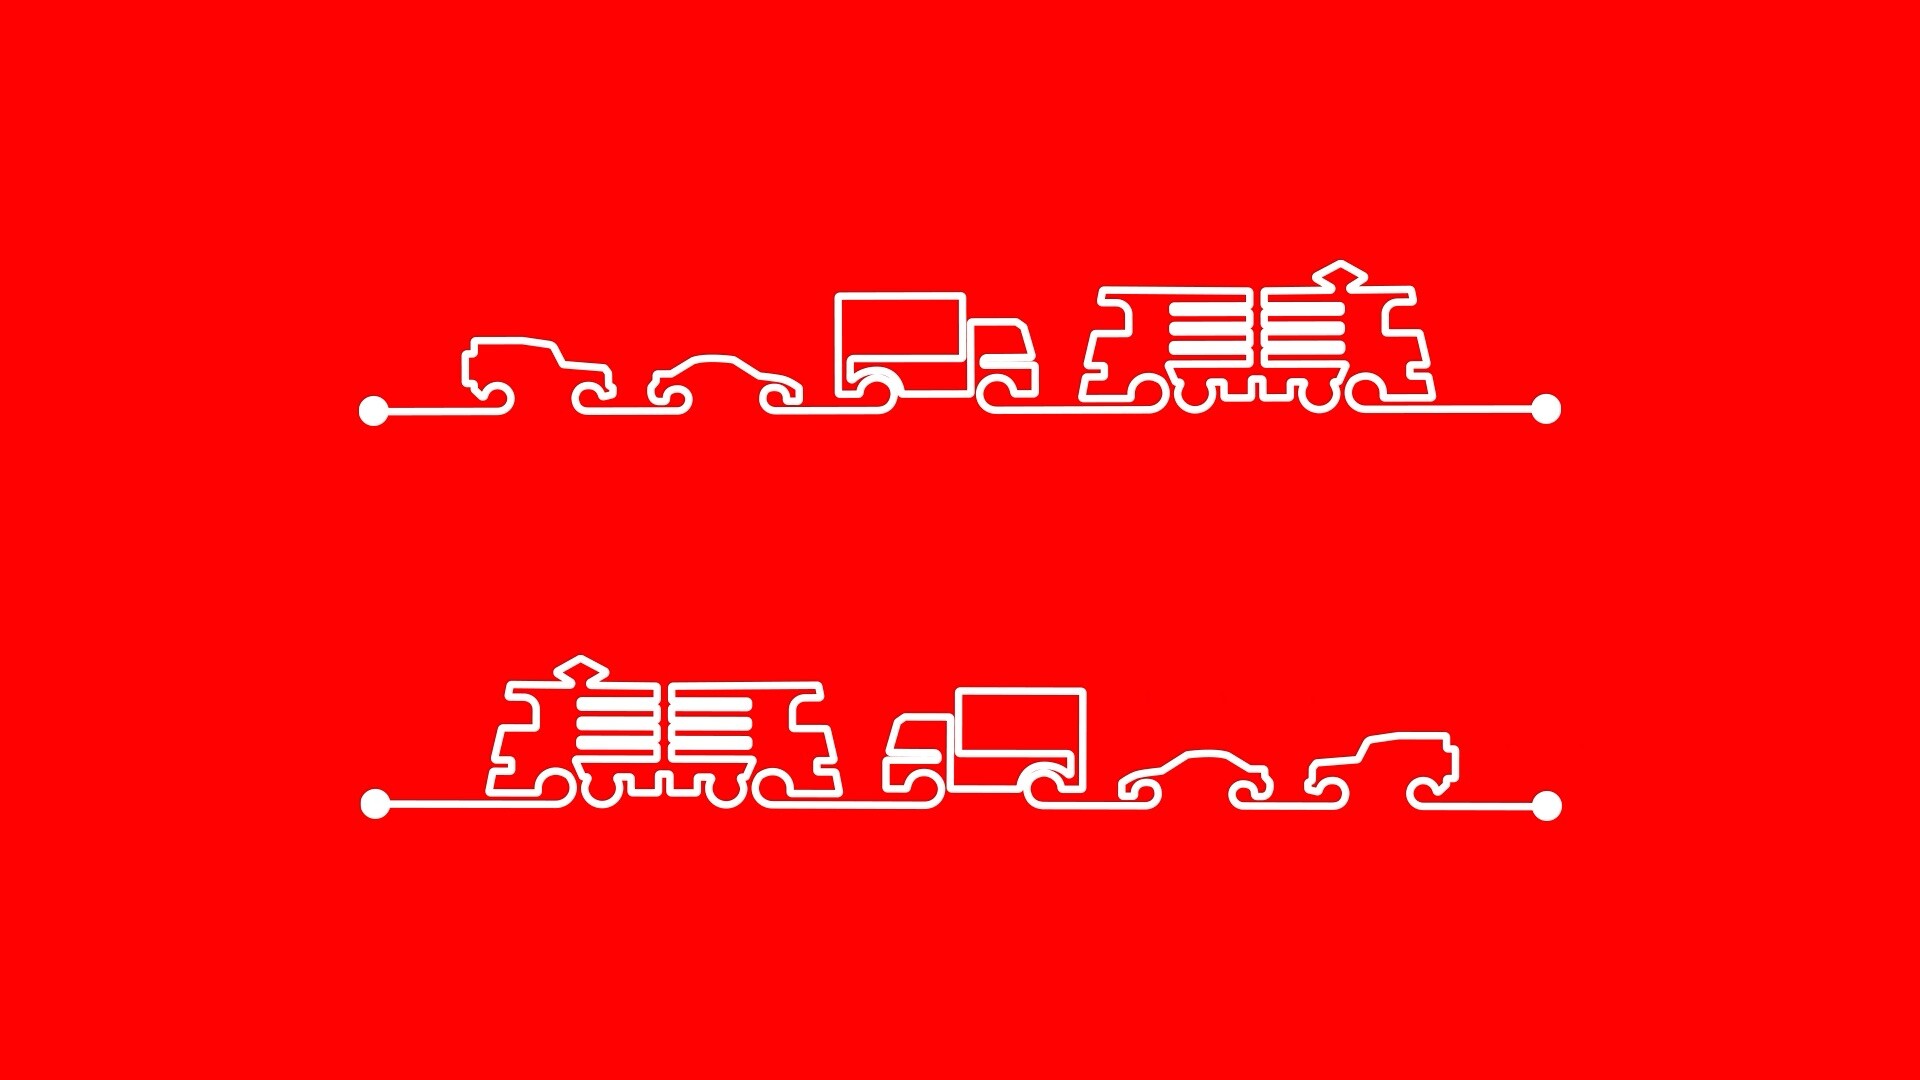 Zwei Lastwagen auf rotem Hintergrund.